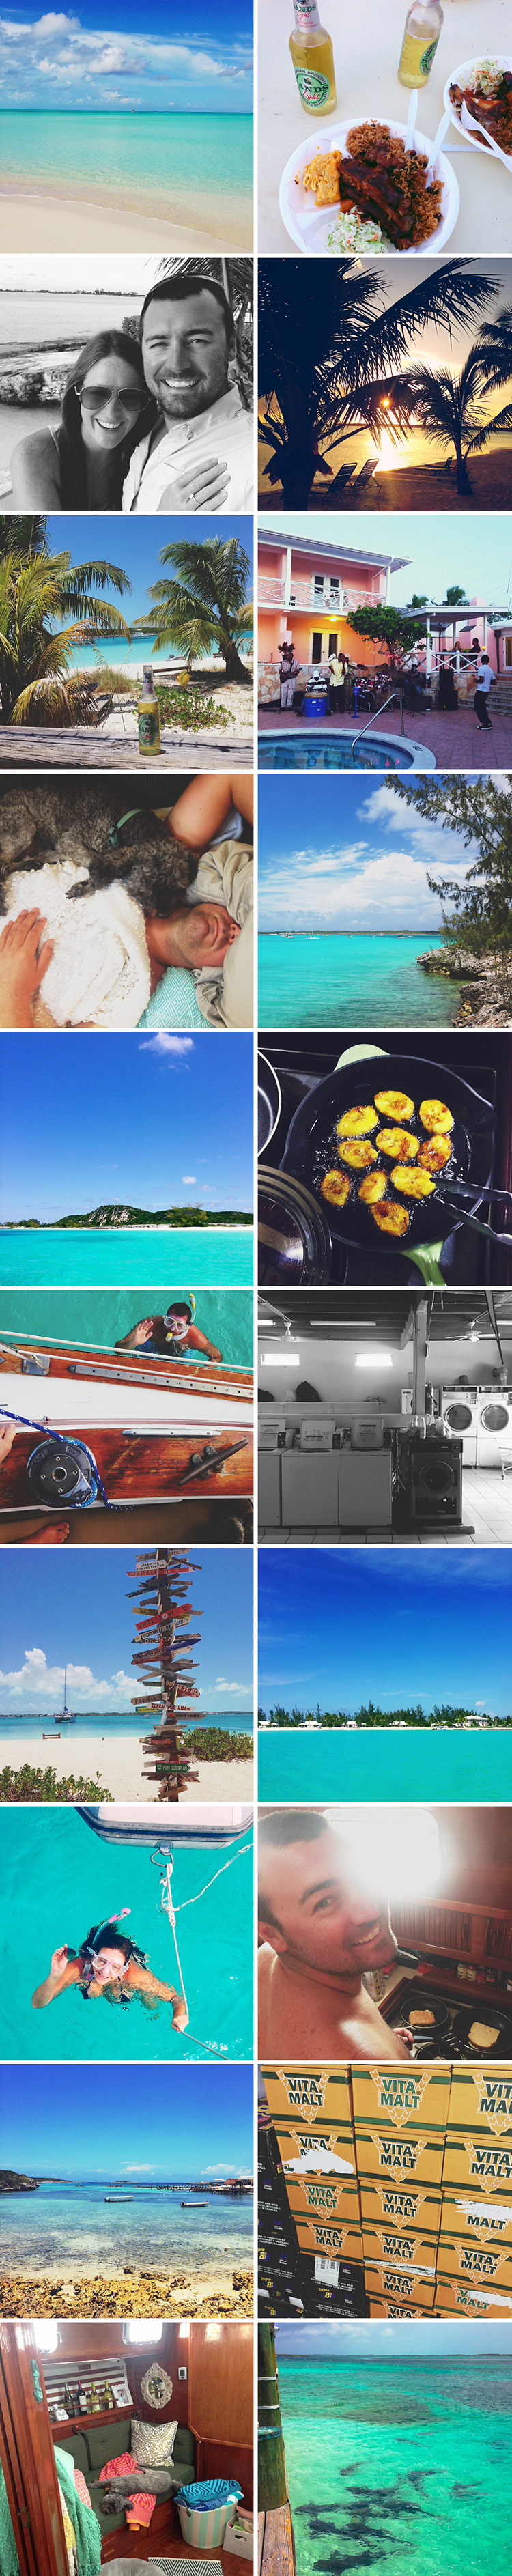 Sailing-Blog-Boat-Life-Lately-May-2014-LAHOWIND-Cruising-Bahamas-Caribbean-2